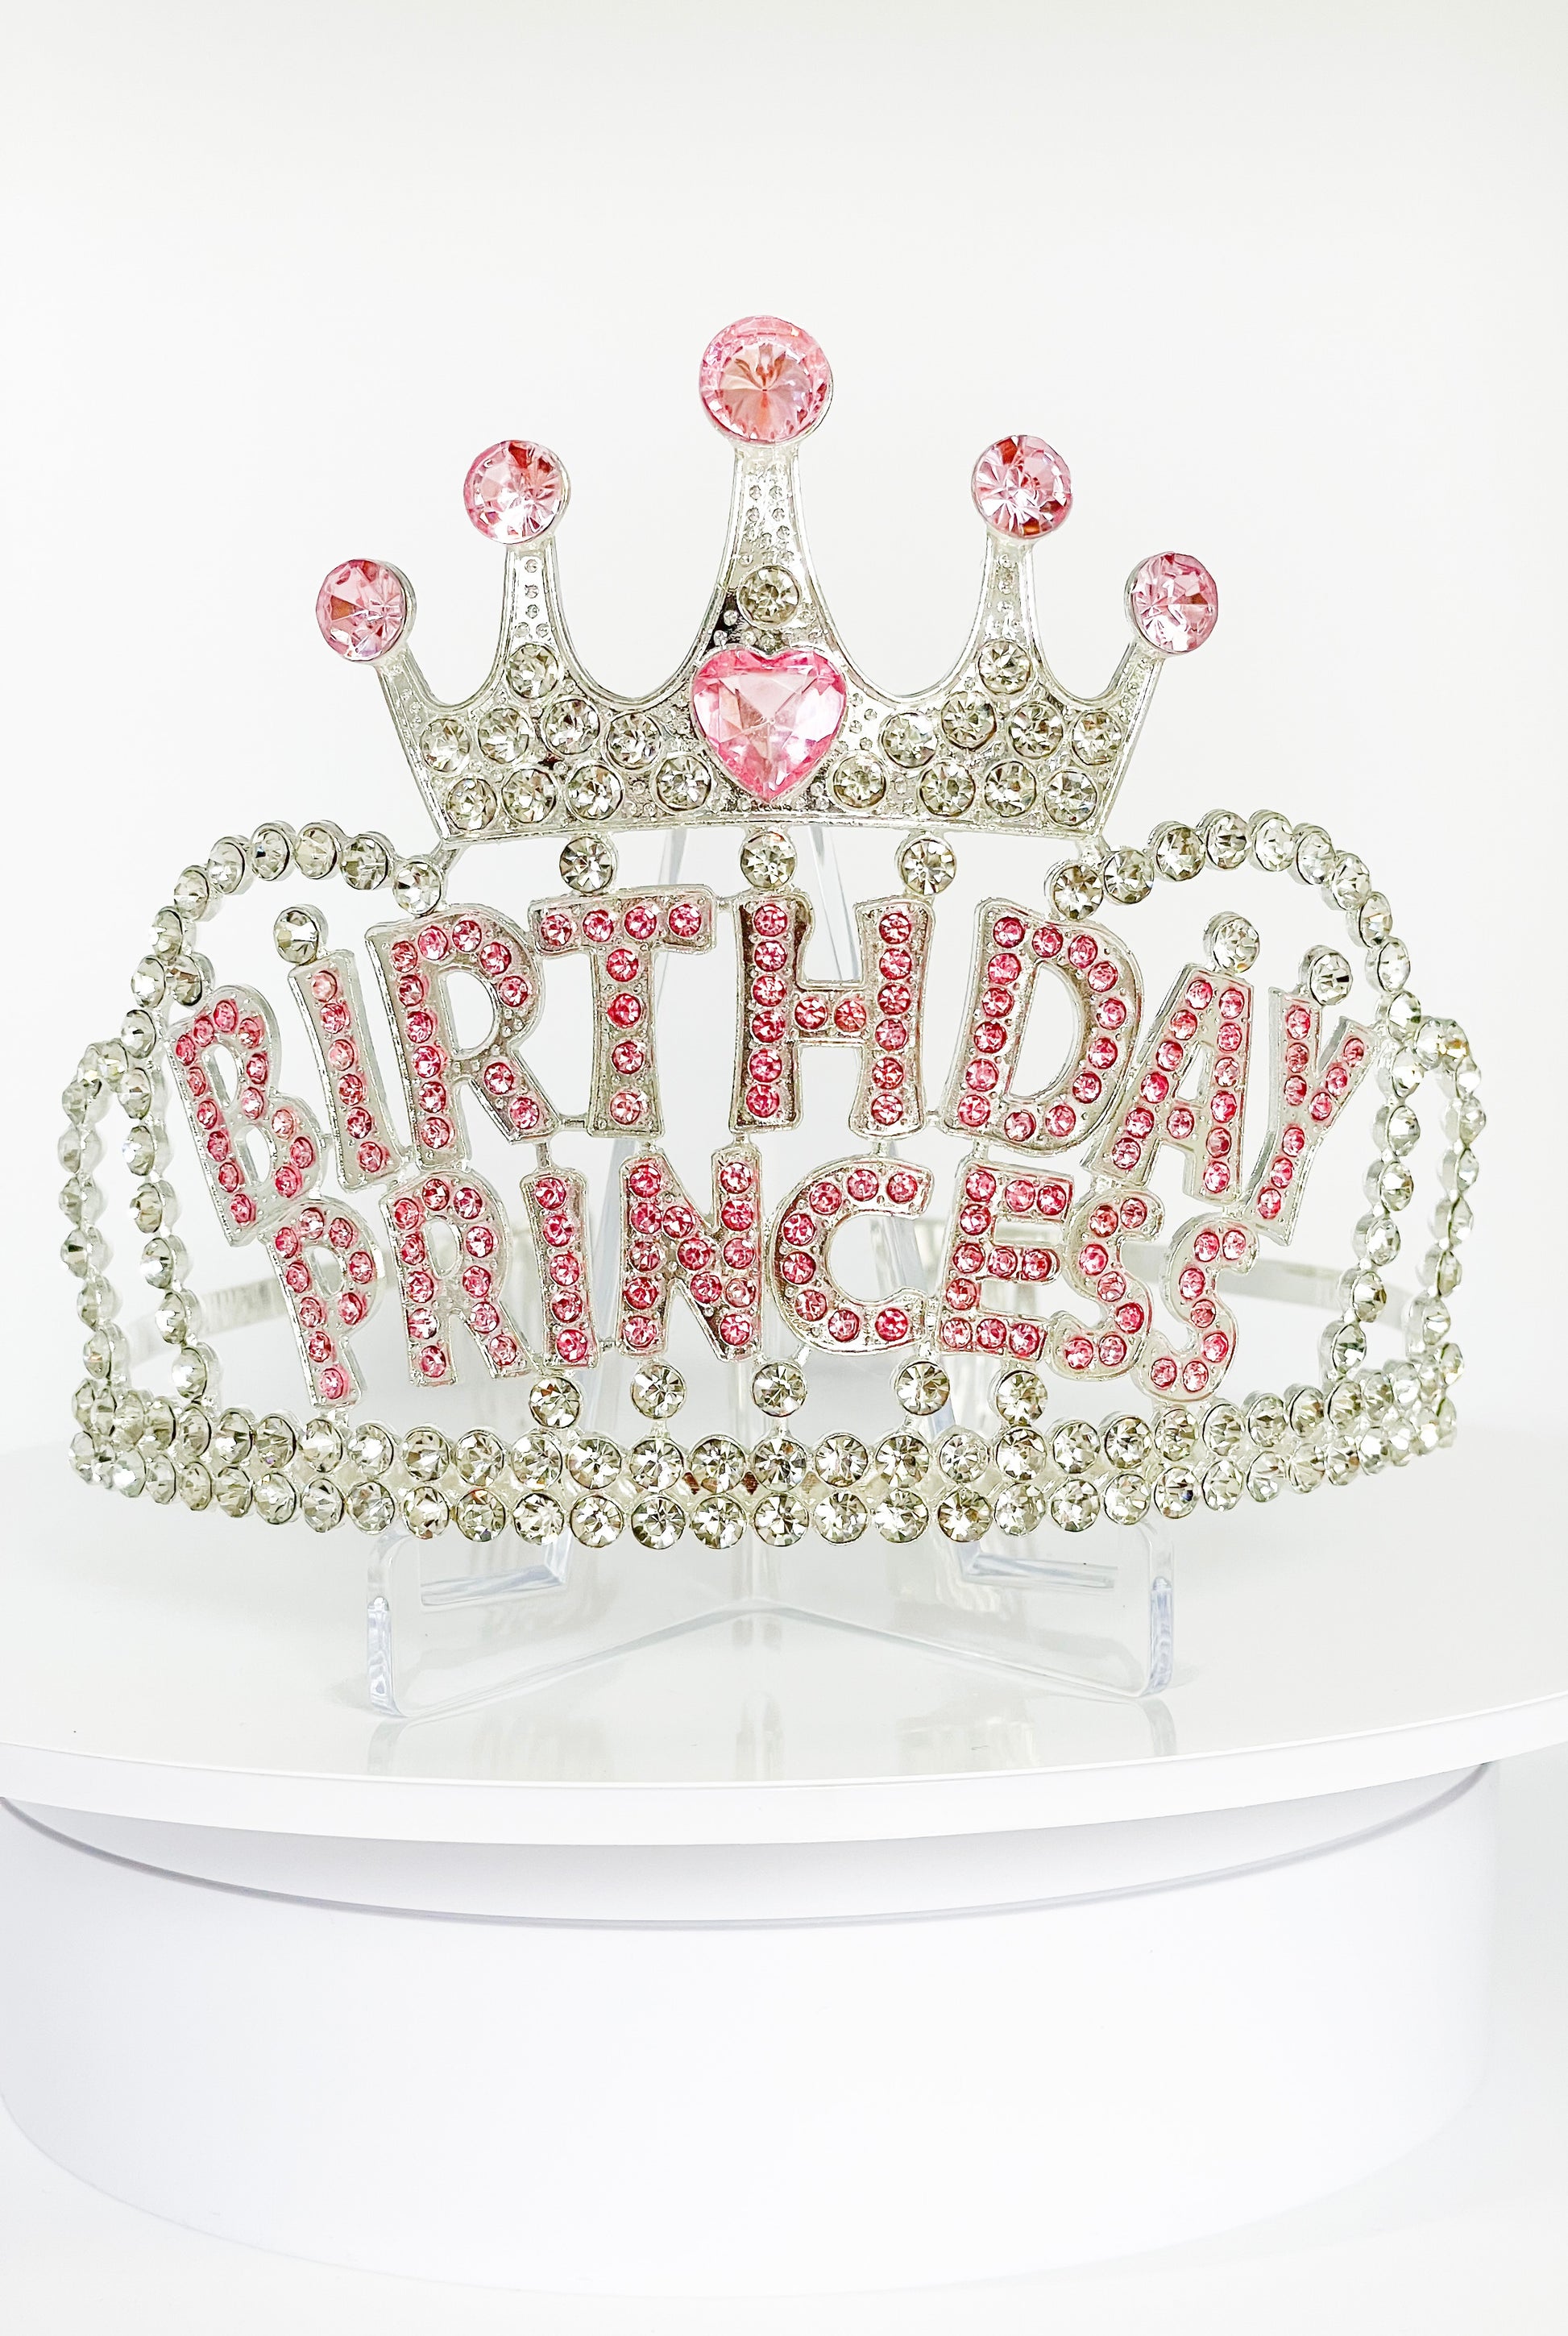 birthday princess tiara